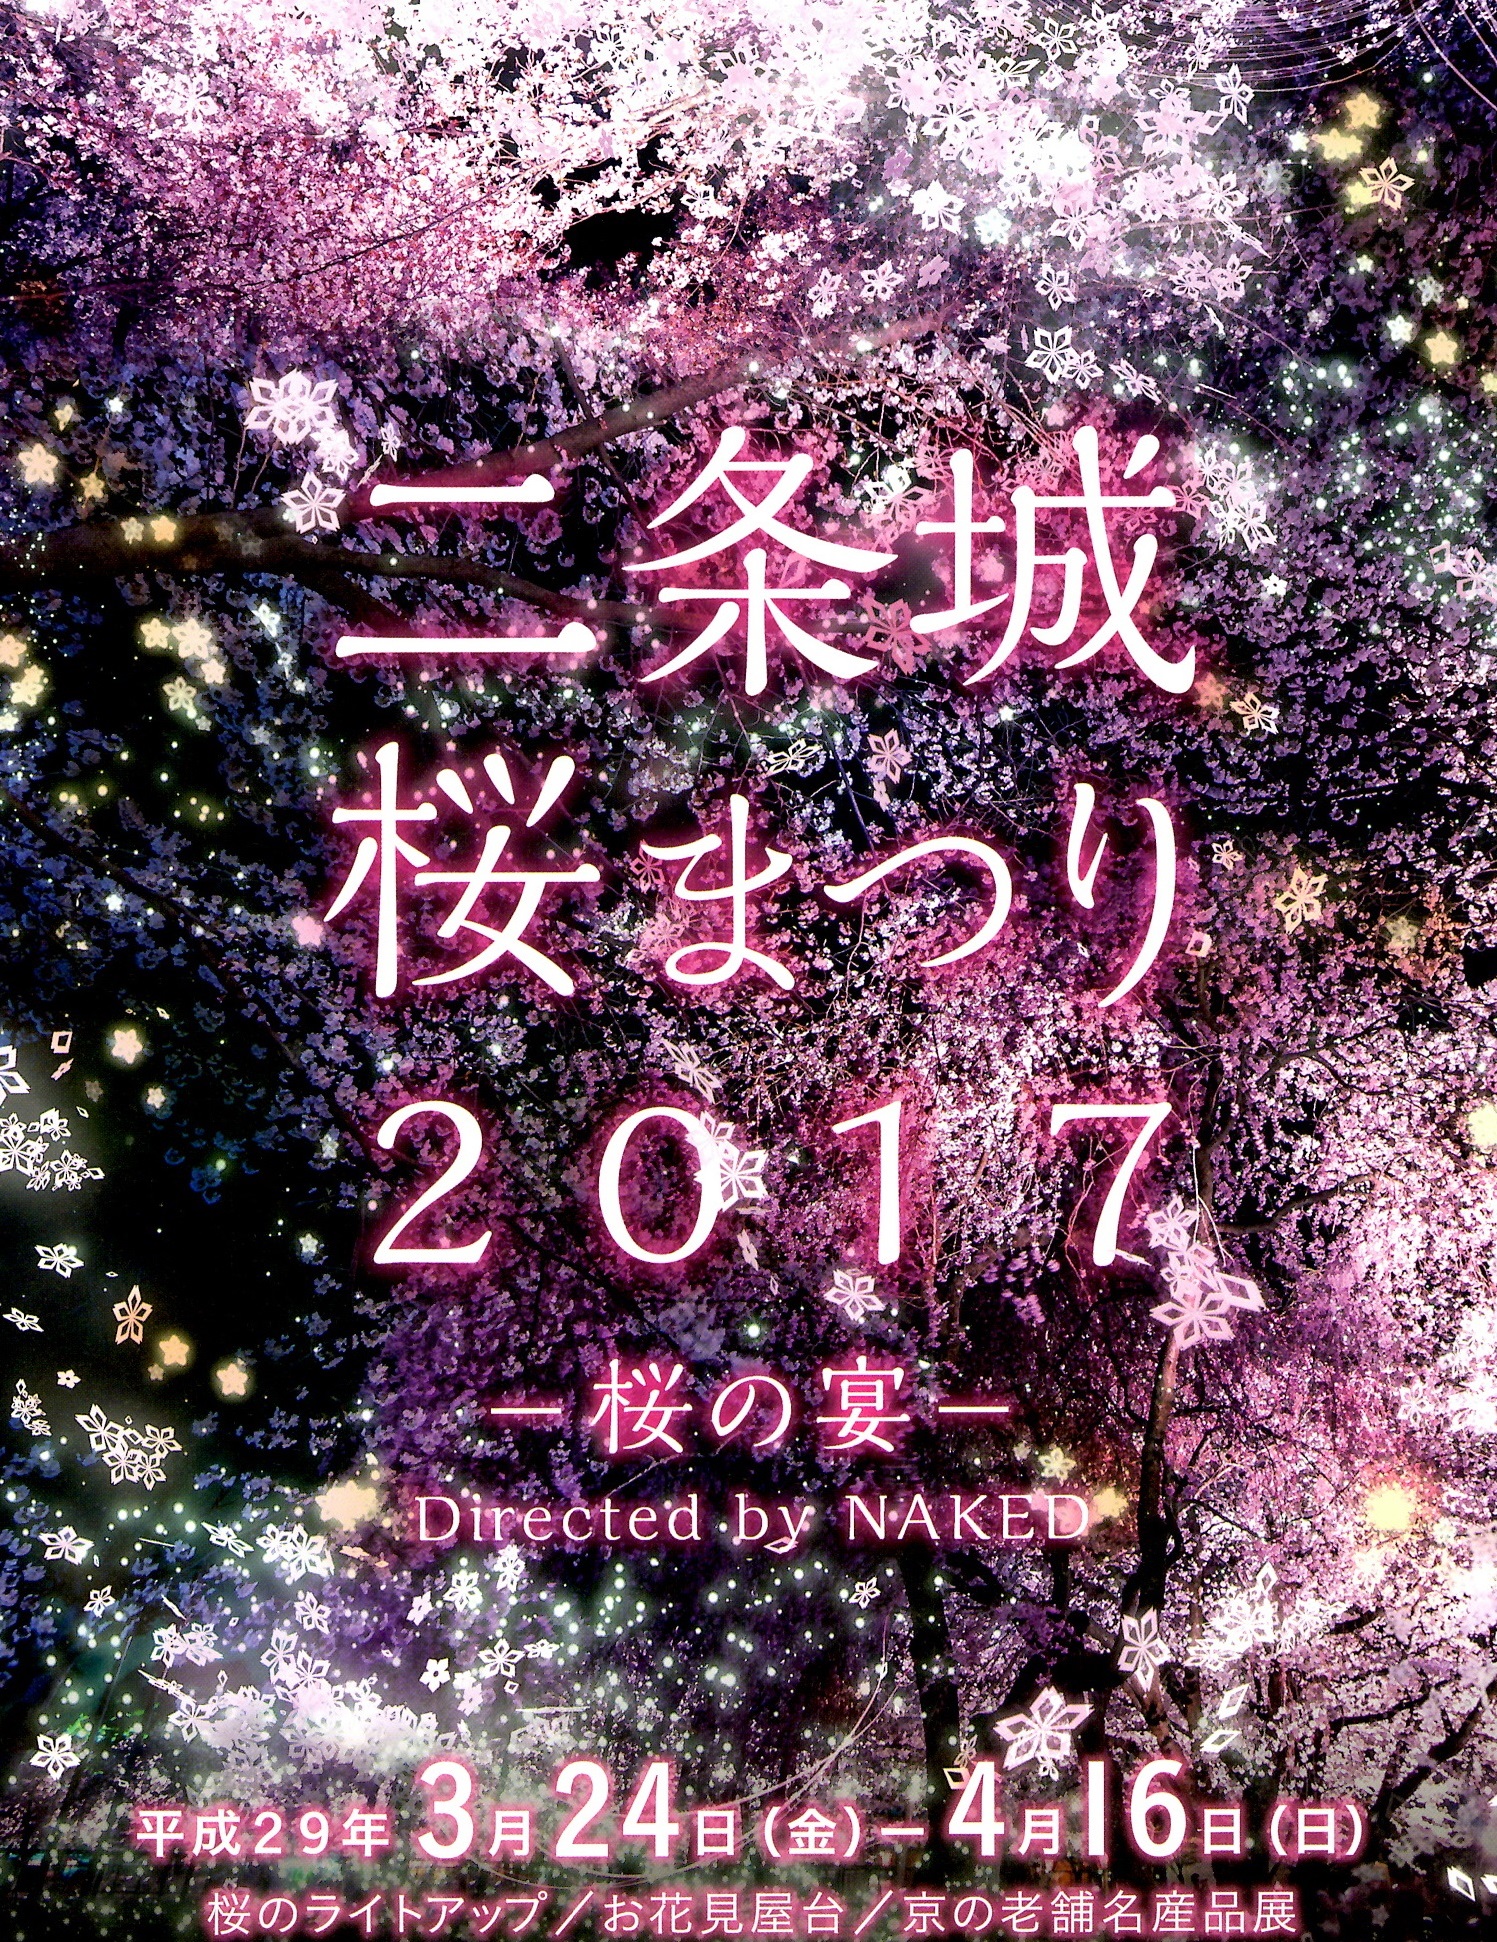 二条城 桜まつり2017のお知らせ(’17年3月23日)